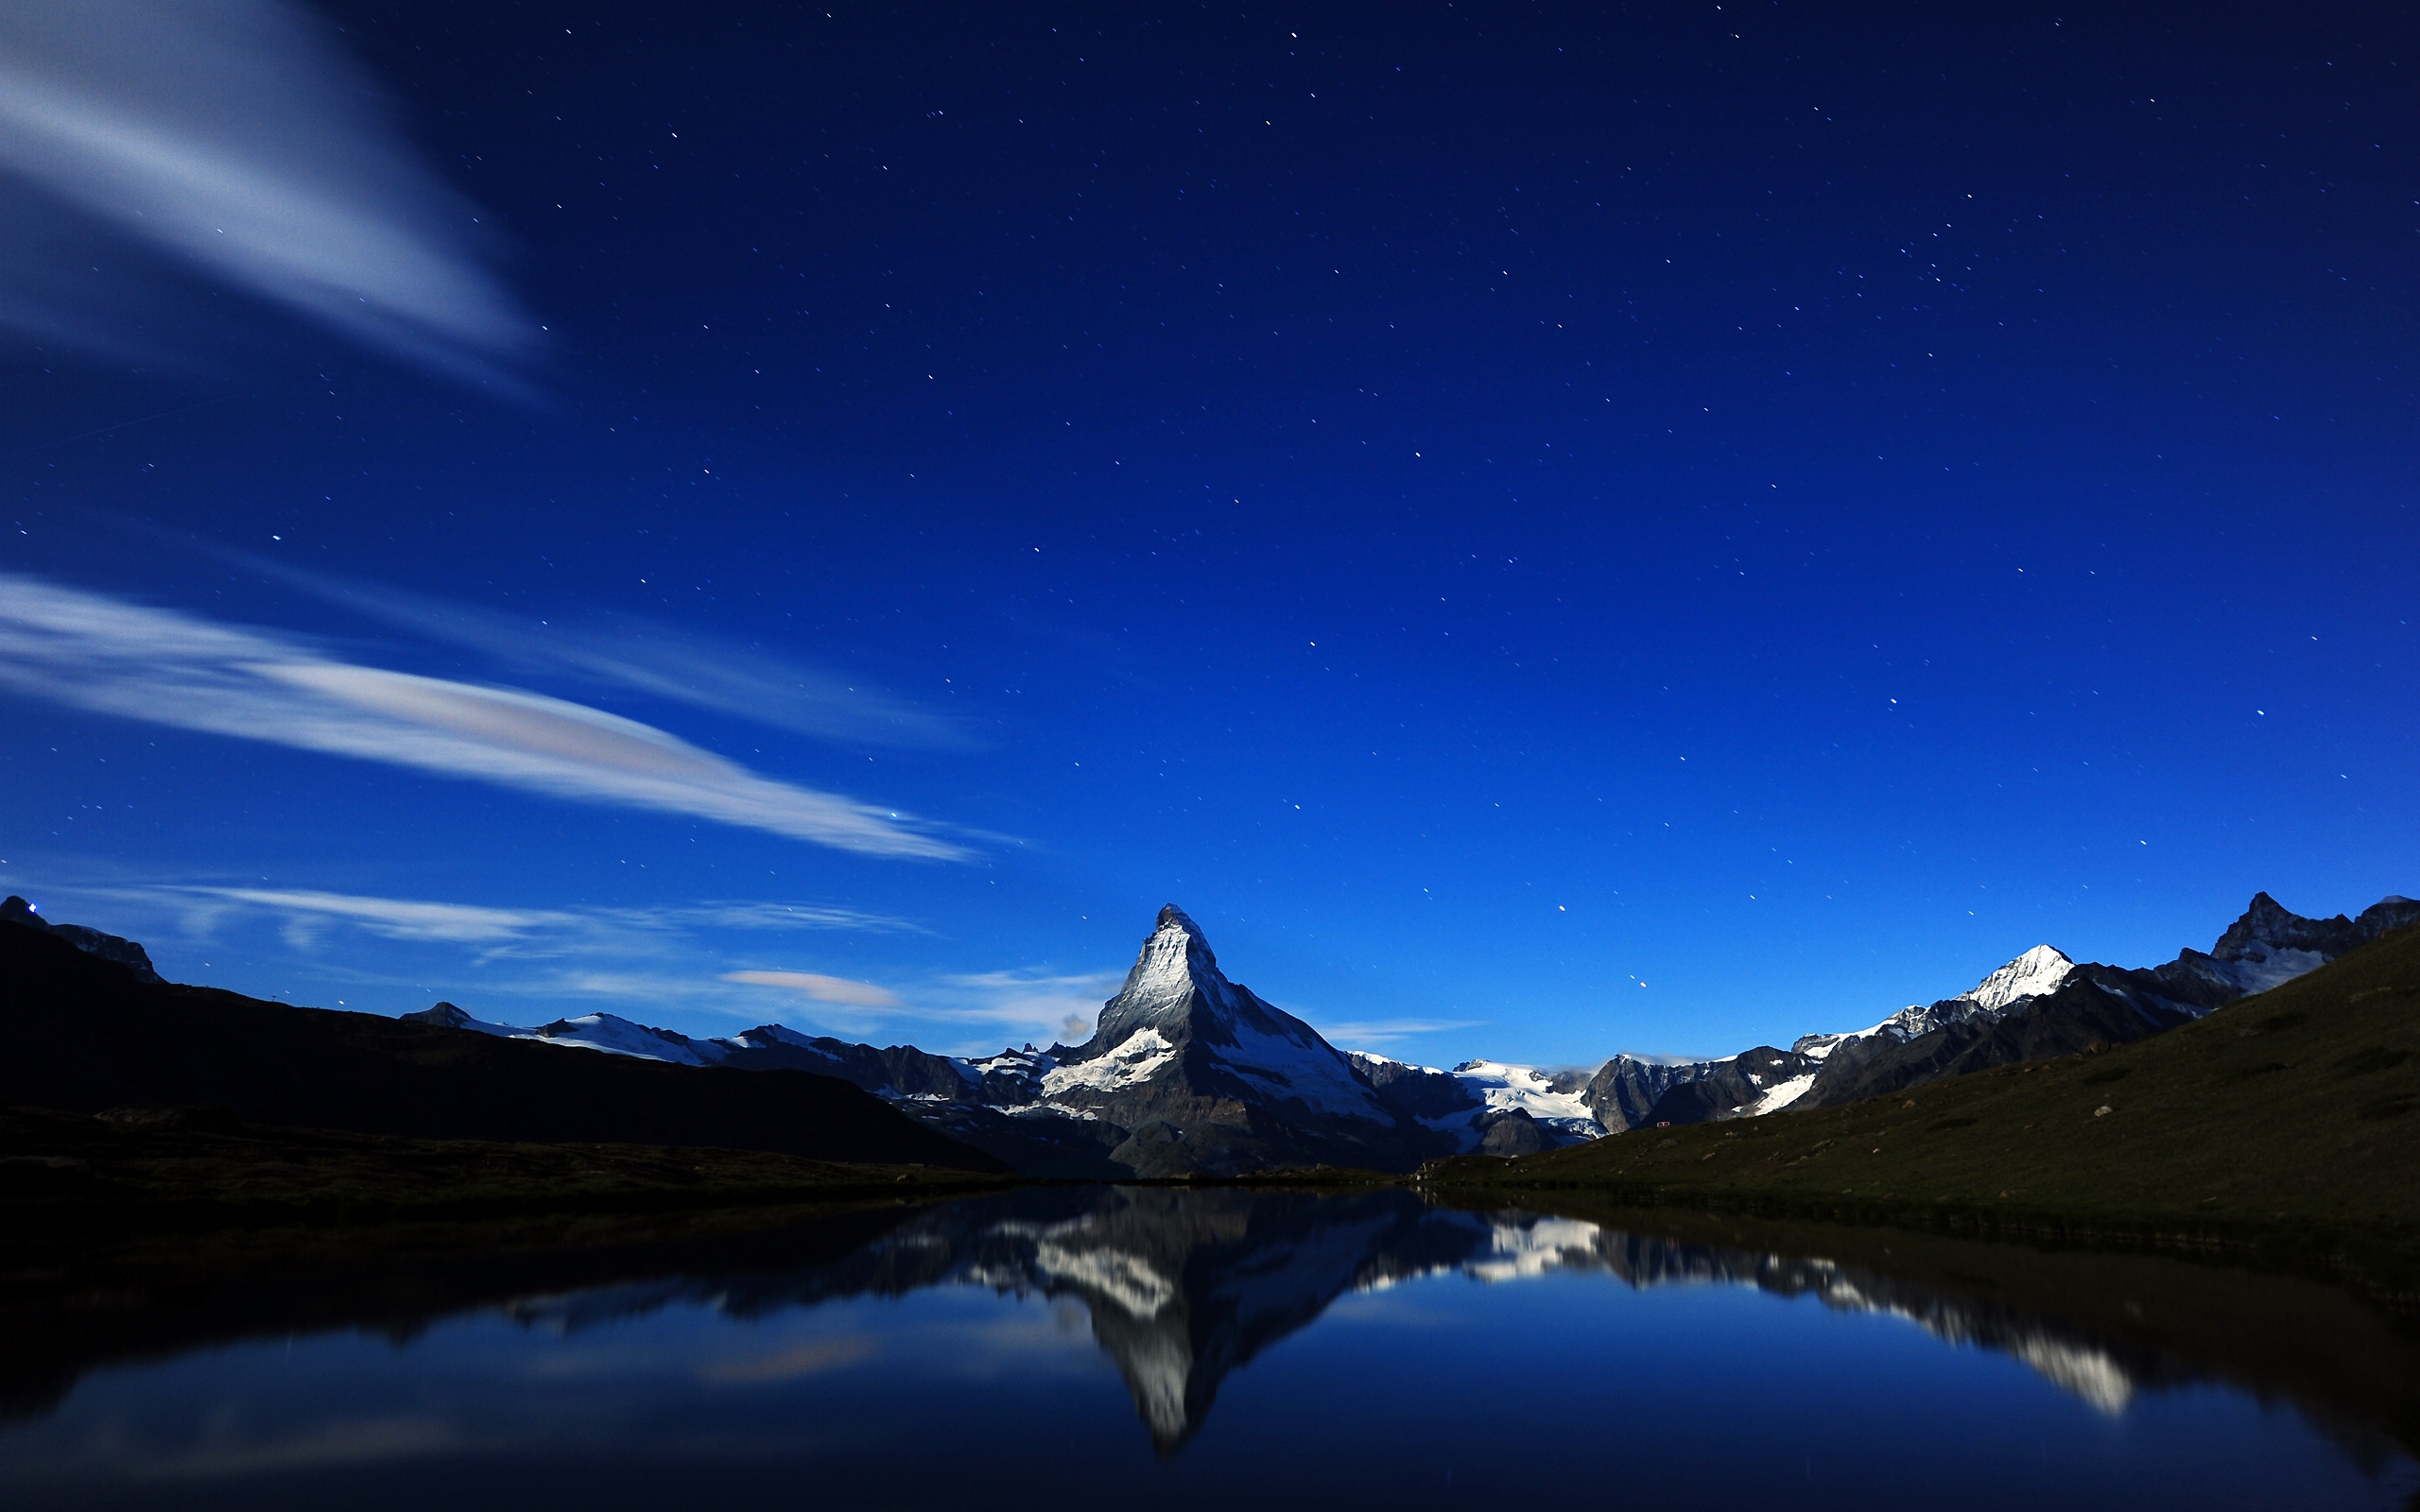 Matterhorn Midnight Reflection for 2560 x 1600 widescreen resolution